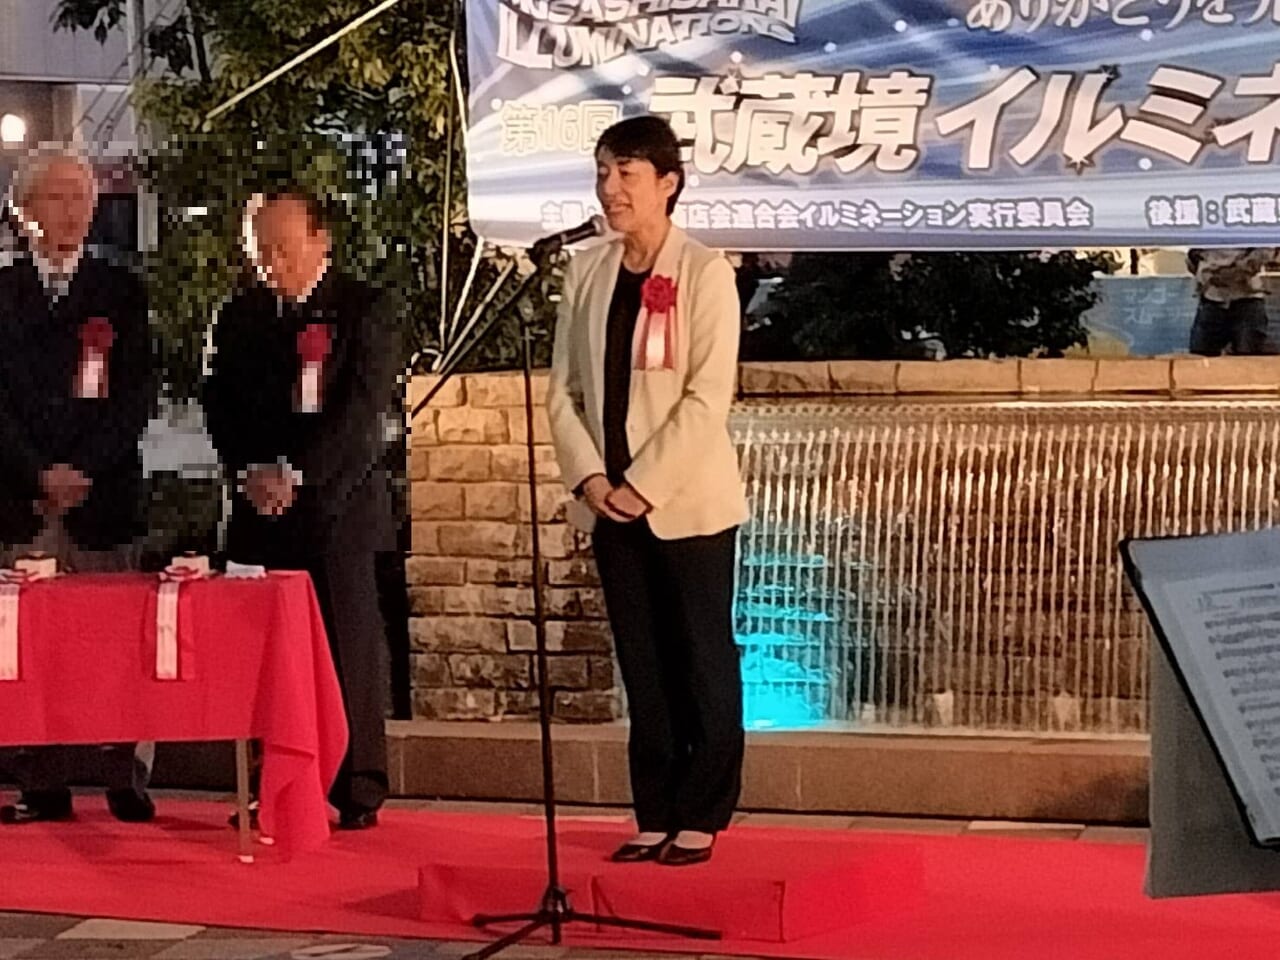 武蔵境イルミネーションに参加した松下玲子武蔵野市長